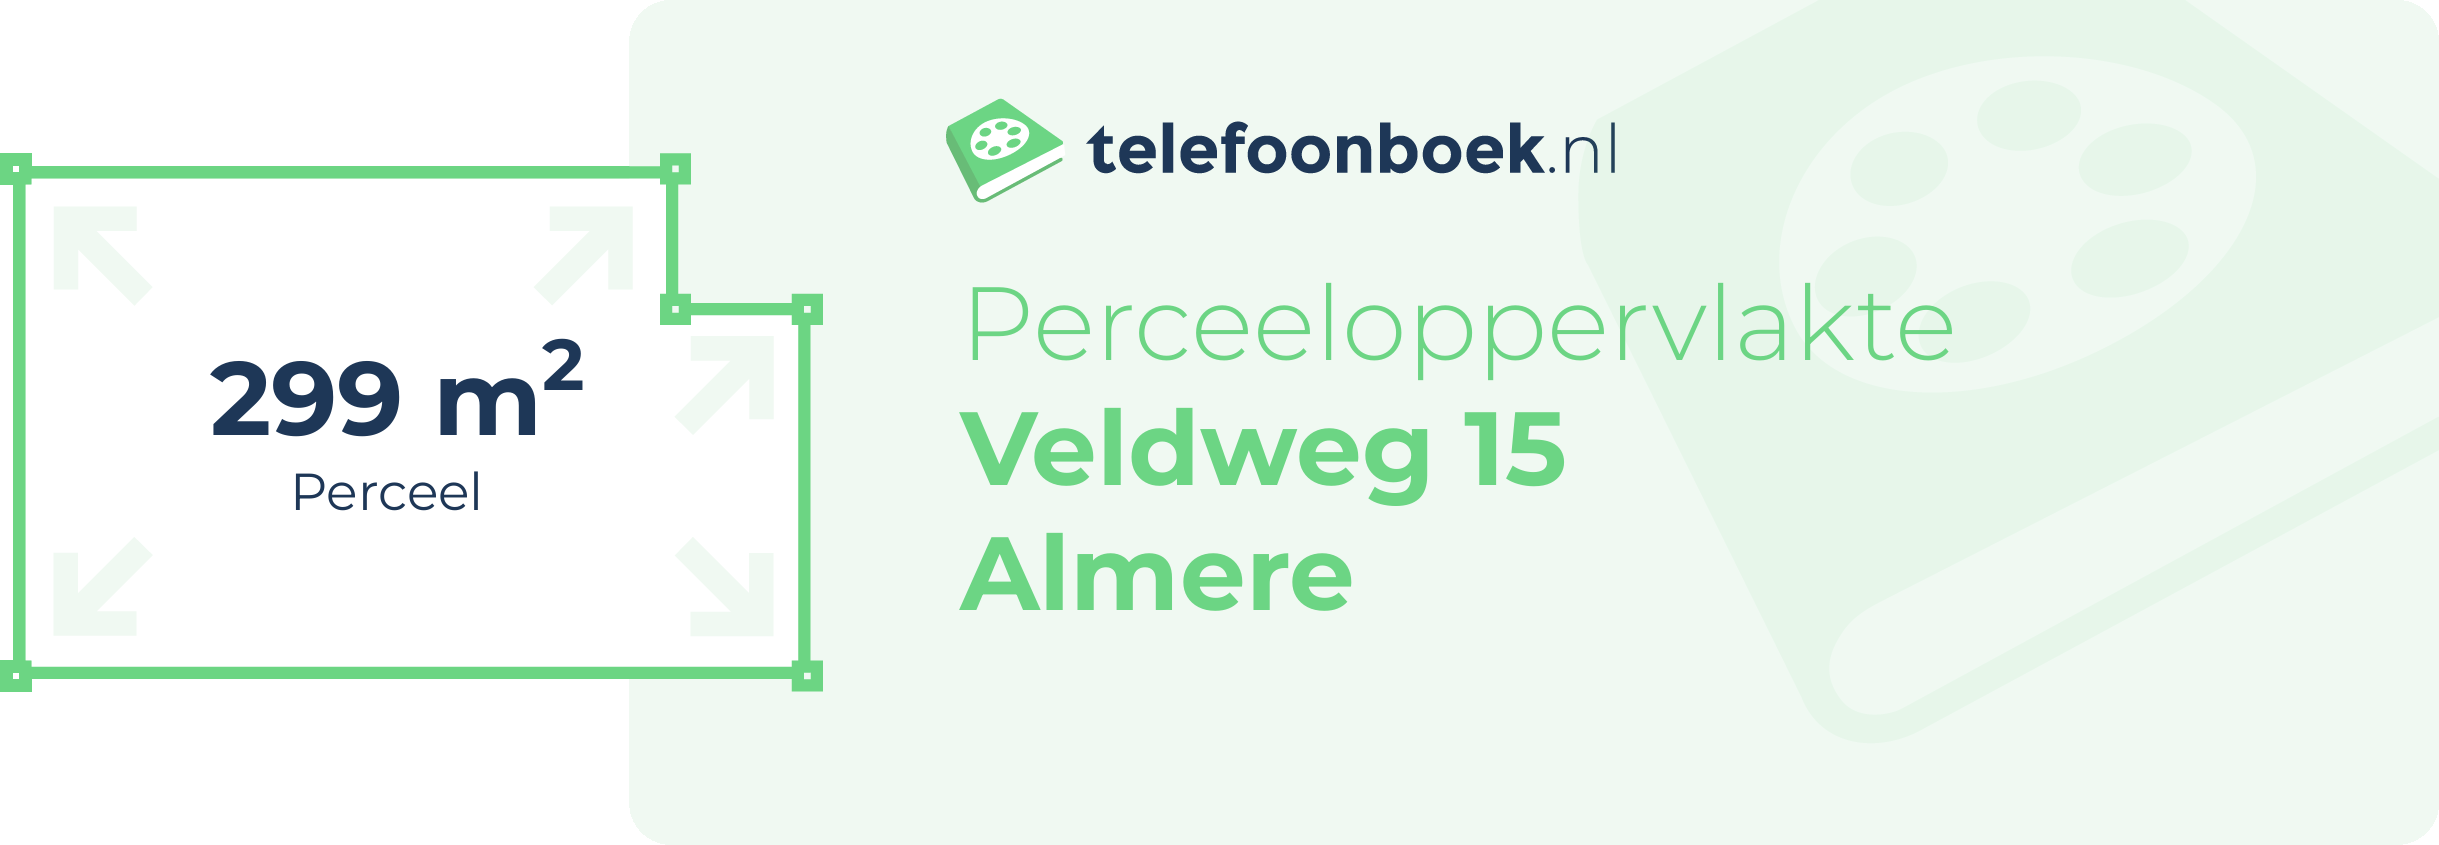 Perceeloppervlakte Veldweg 15 Almere